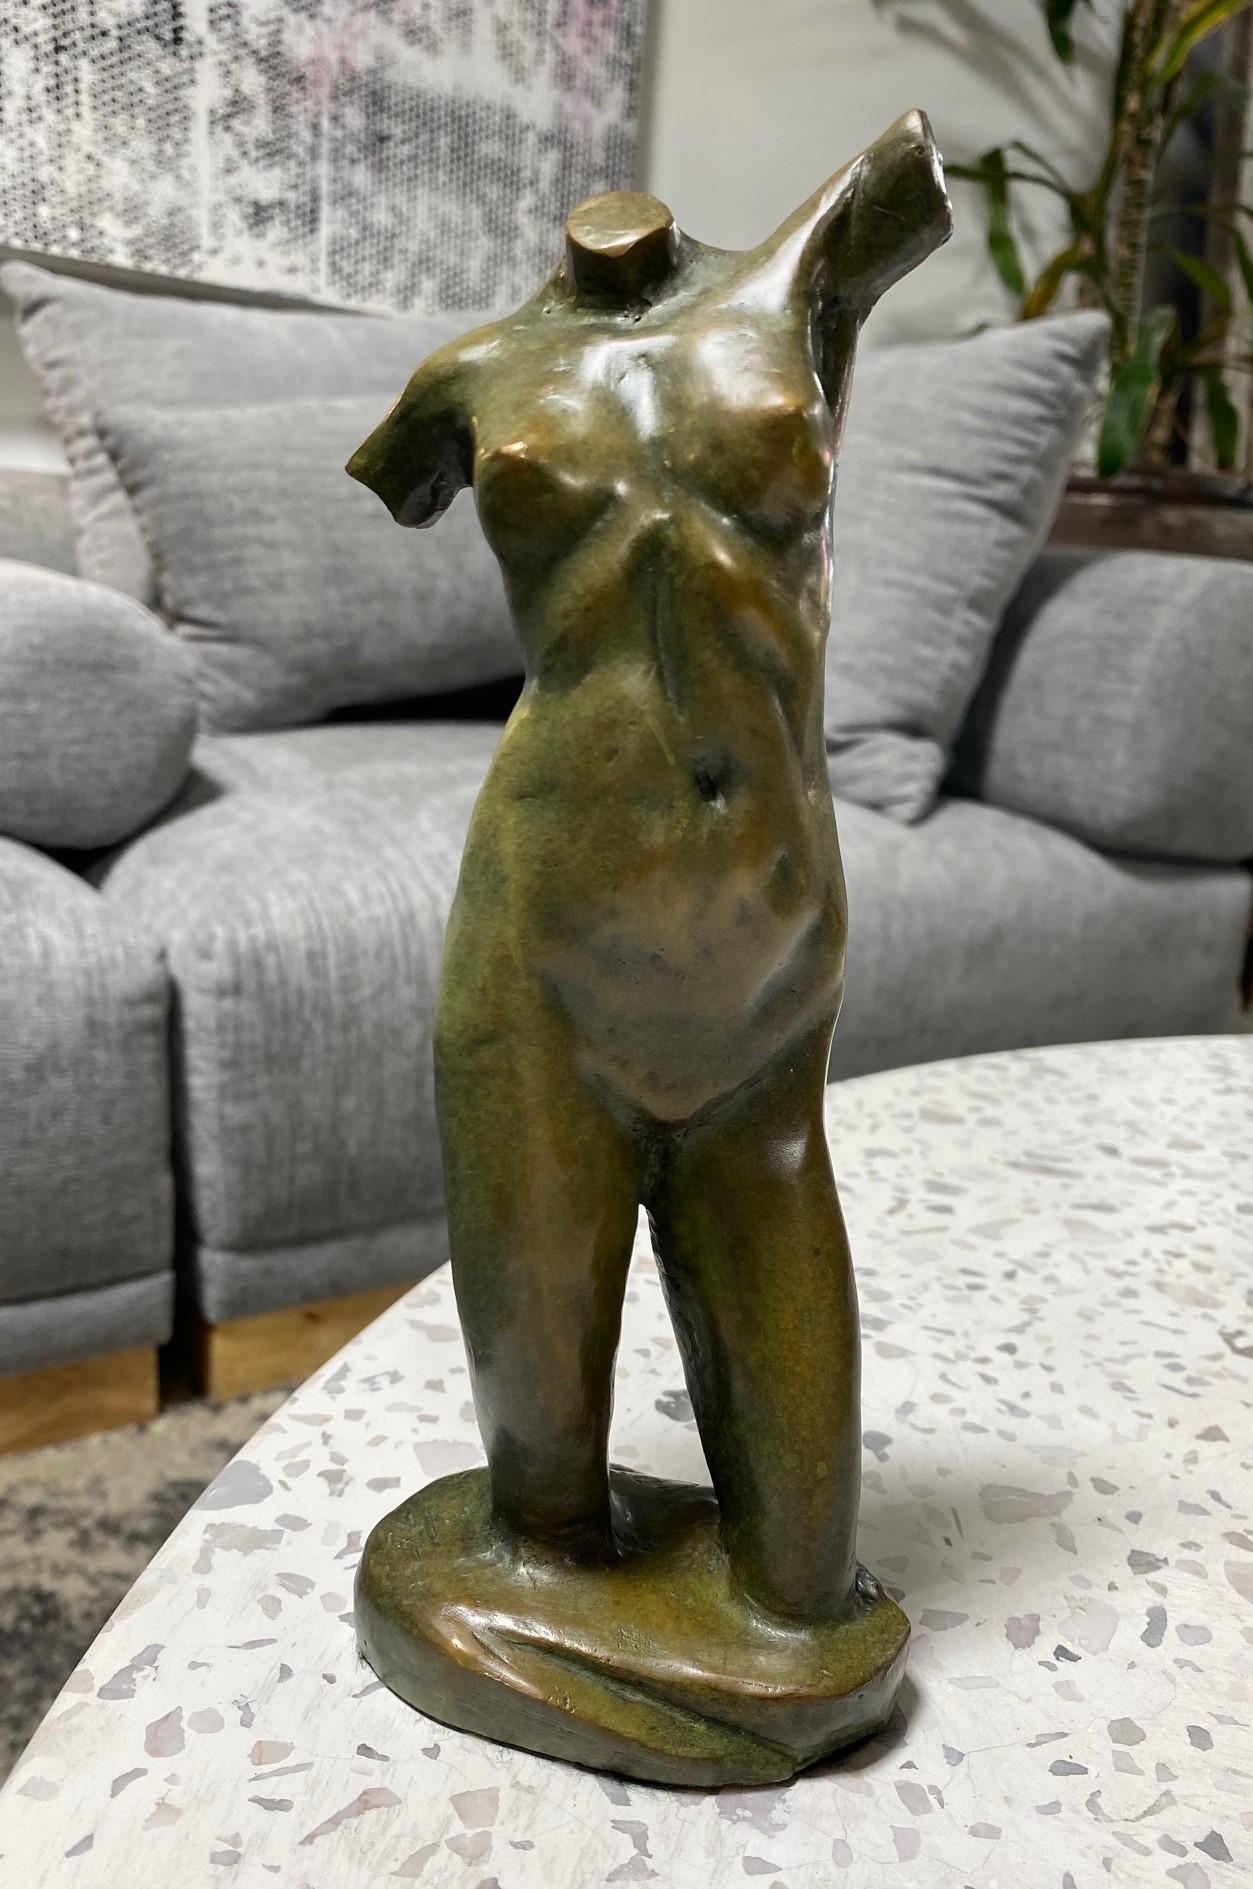 Ein wunderbares Werk des bekannten amerikanischen Künstlers und Bildhauers Tom Corbin. Dieses Stück eines figurativen weiblichen Aktes trägt den Titel Reaching Torso und weist eine fantastische reichhaltige grün/braune Patina auf. 

Das Werk in